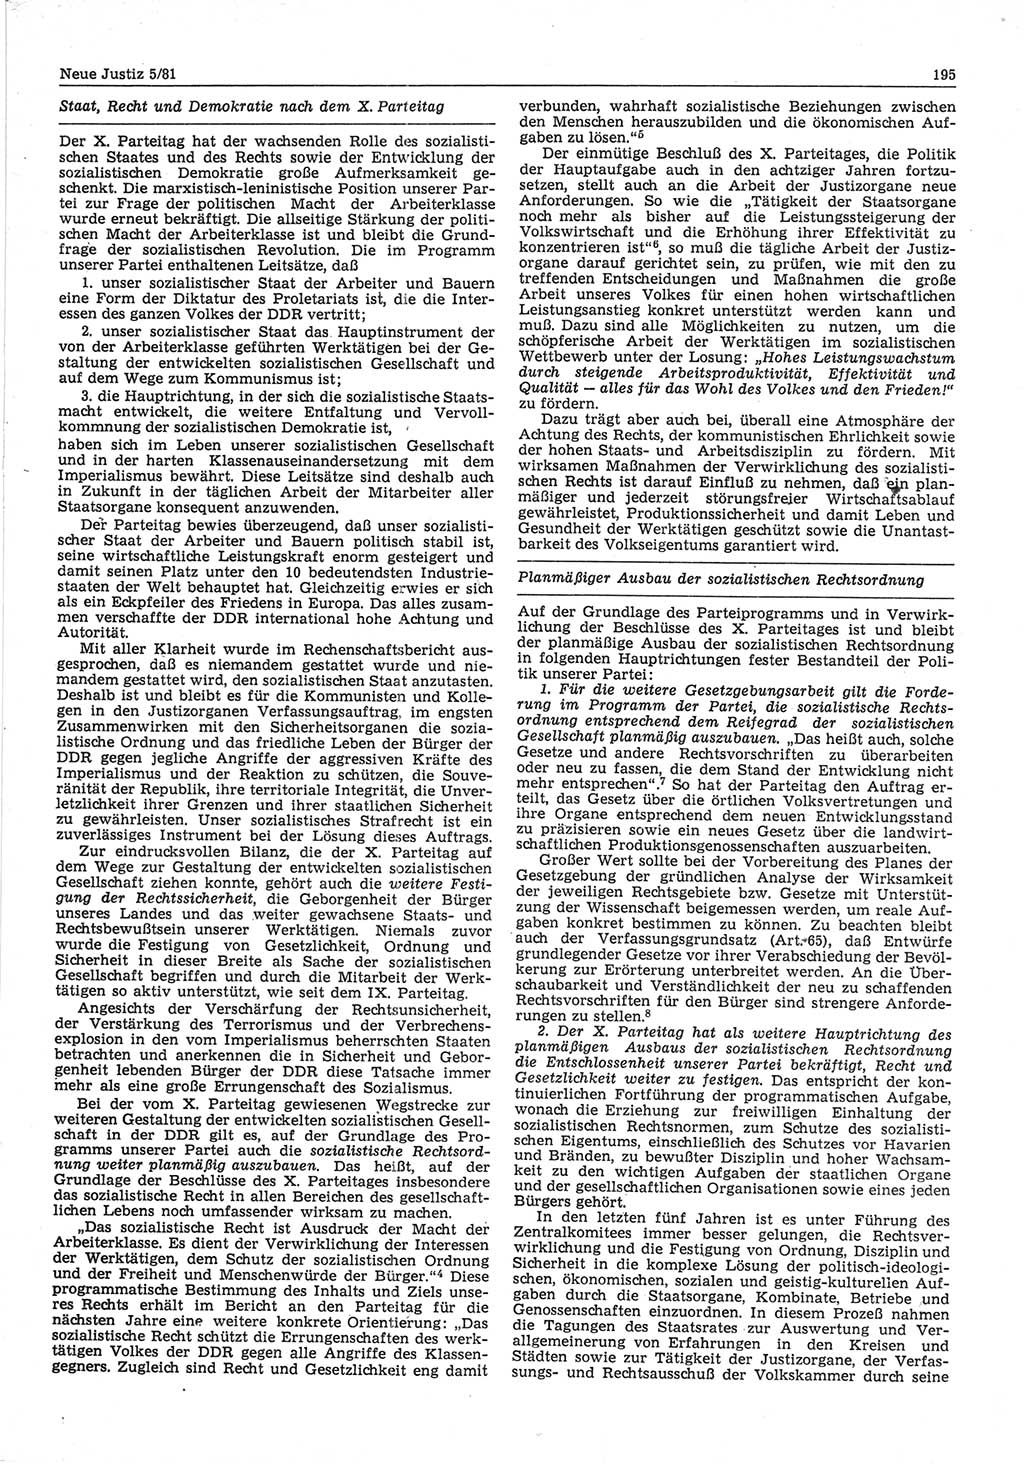 Neue Justiz (NJ), Zeitschrift für sozialistisches Recht und Gesetzlichkeit [Deutsche Demokratische Republik (DDR)], 35. Jahrgang 1981, Seite 195 (NJ DDR 1981, S. 195)